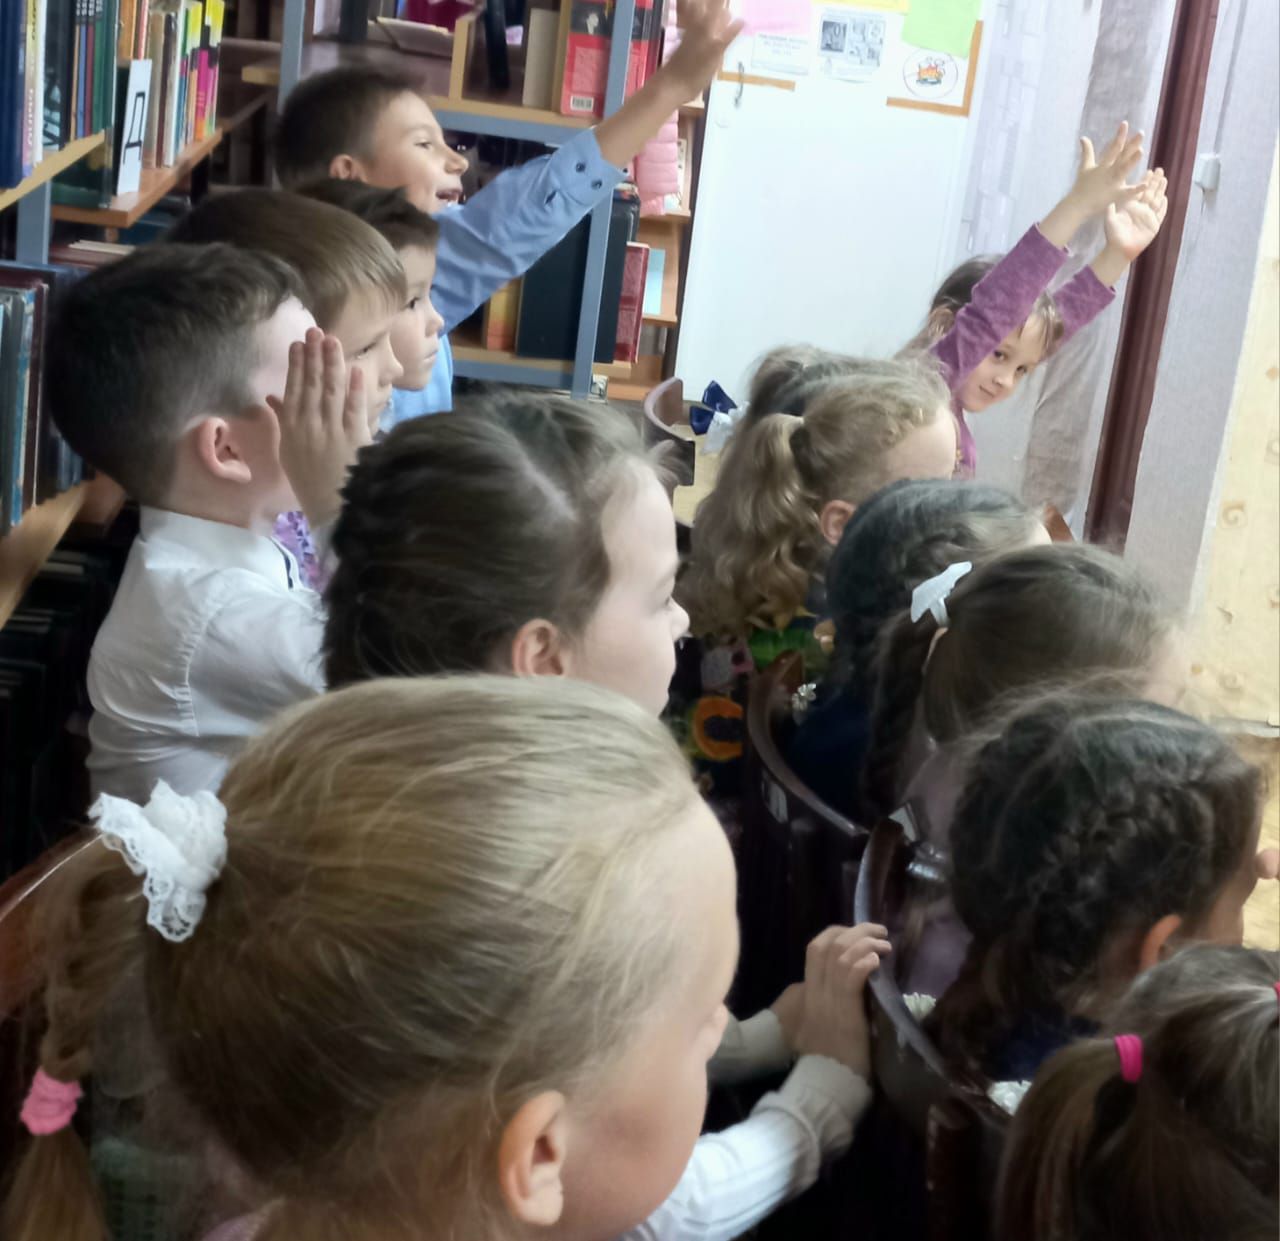 В детской библиотеке Нурлата состоялось путешествие по Культурограду